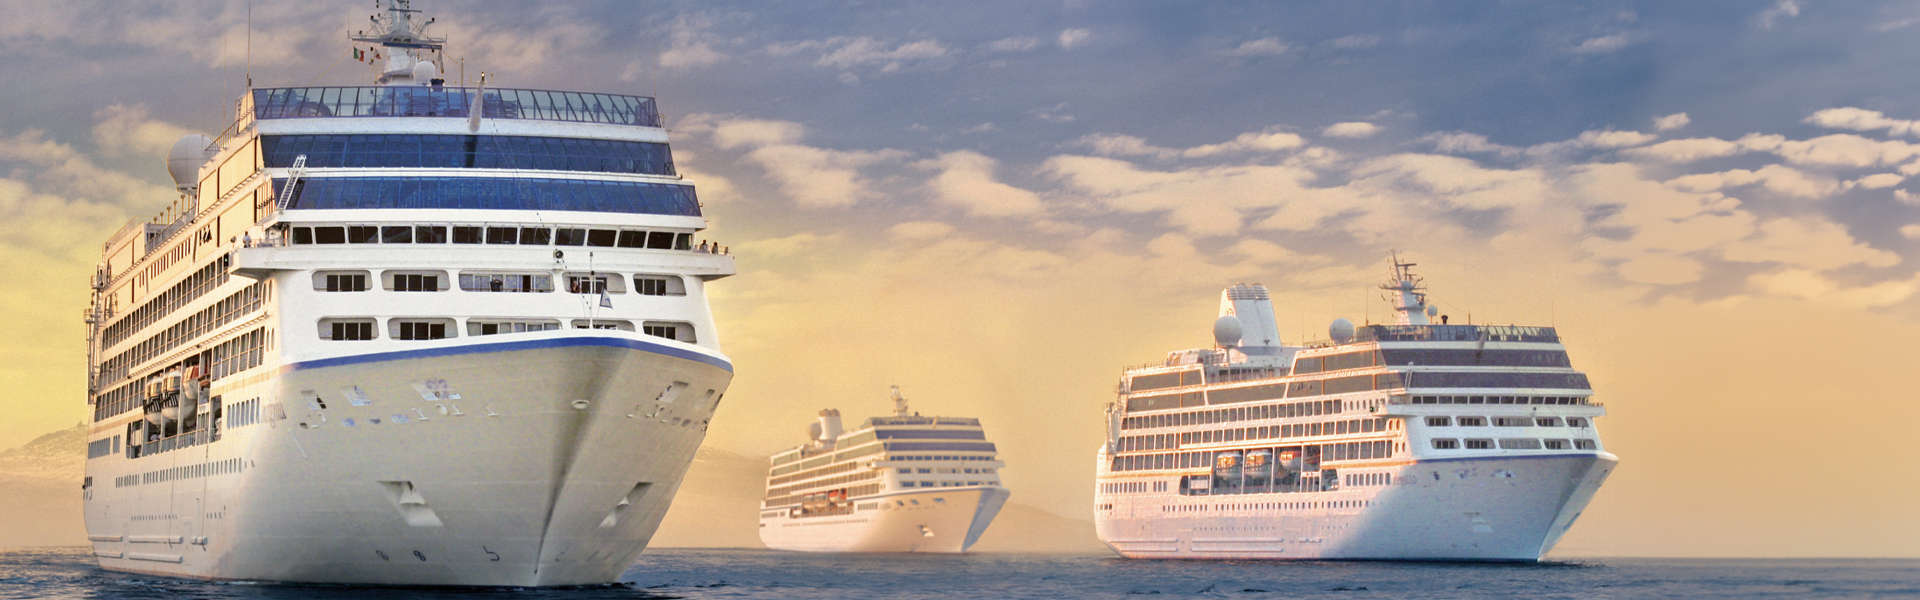 Los destinos más increibles con nuestras Ofertas Oceania Cruises